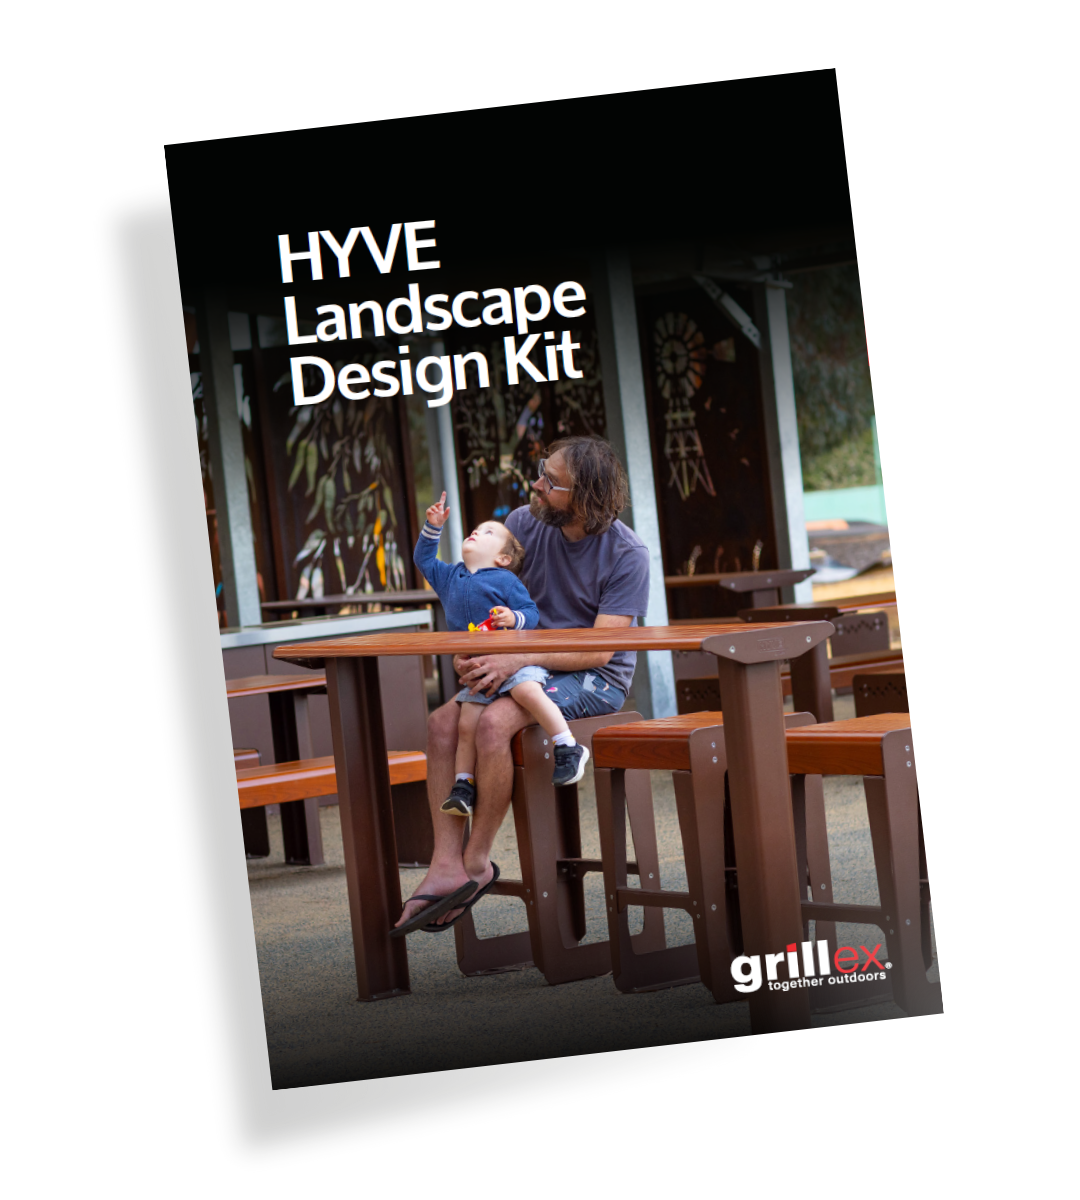 Grillex-HYVE_Design_Kit-MockUp